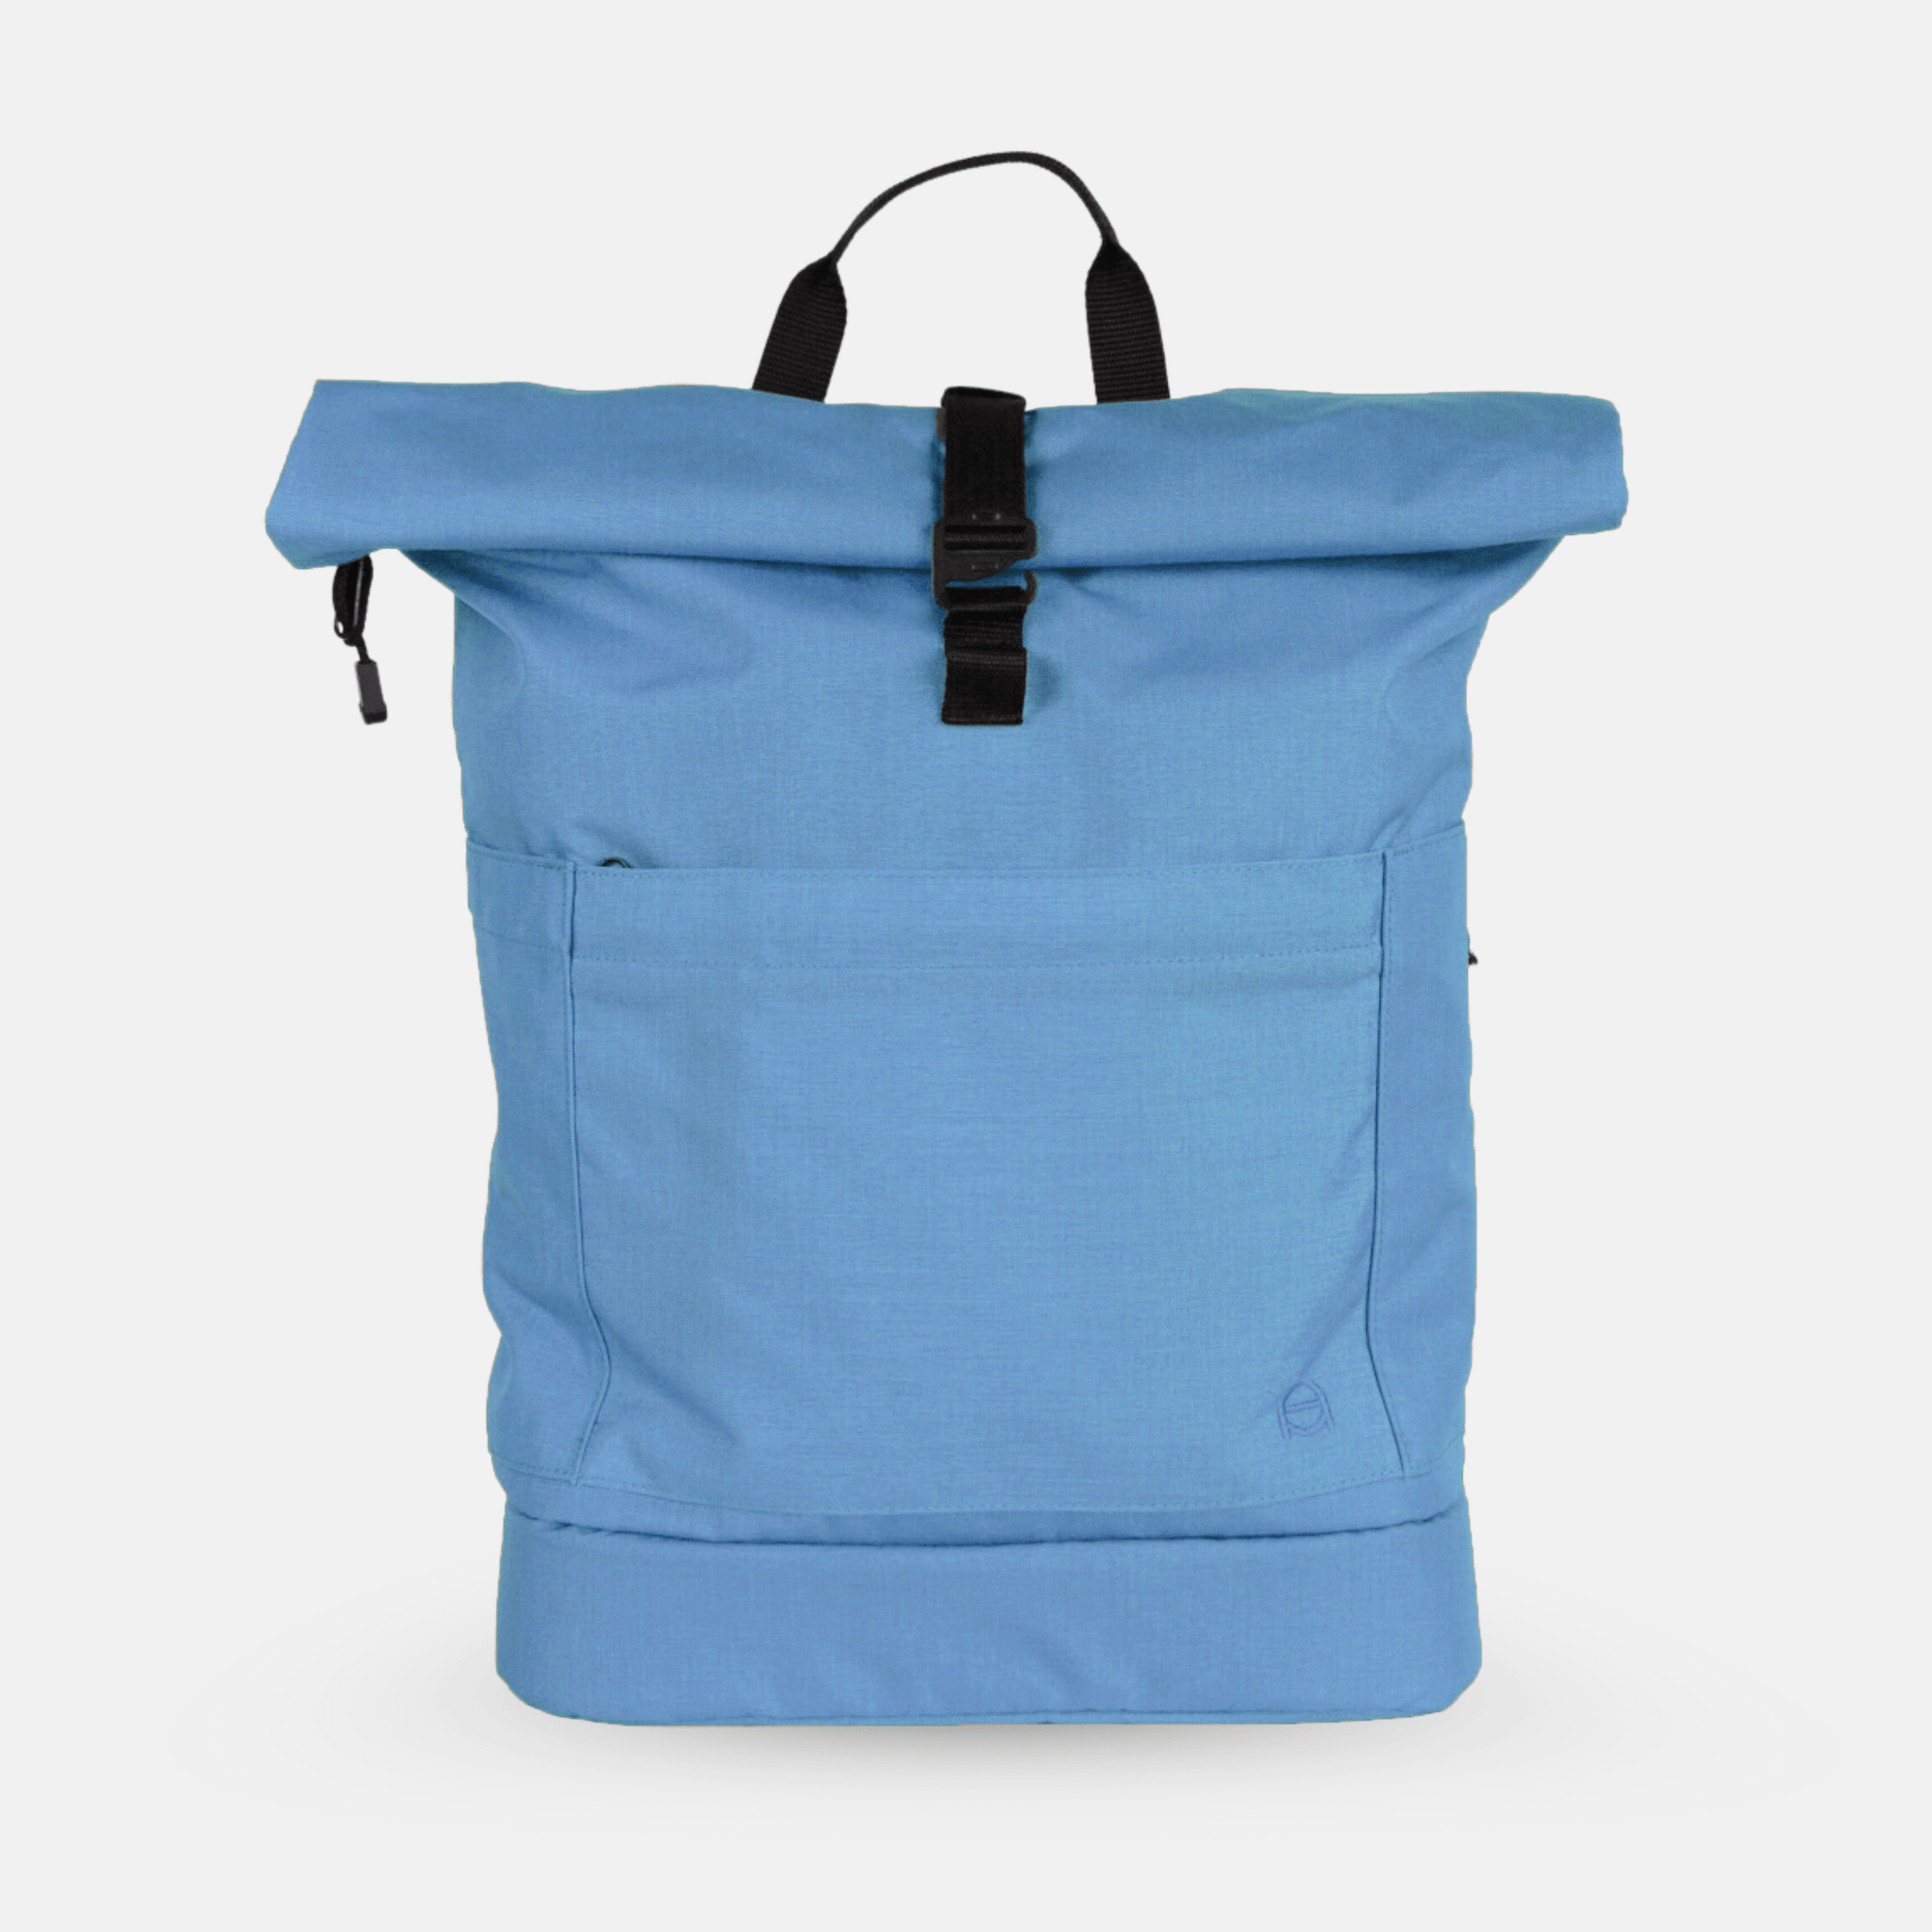 Nachhaltig und fair produzierter Wickelrucksack aus blauer Cordura von Anna und oskar. Inklusive Kinderwagenaufhängung, Wetbag und Brustgurt.